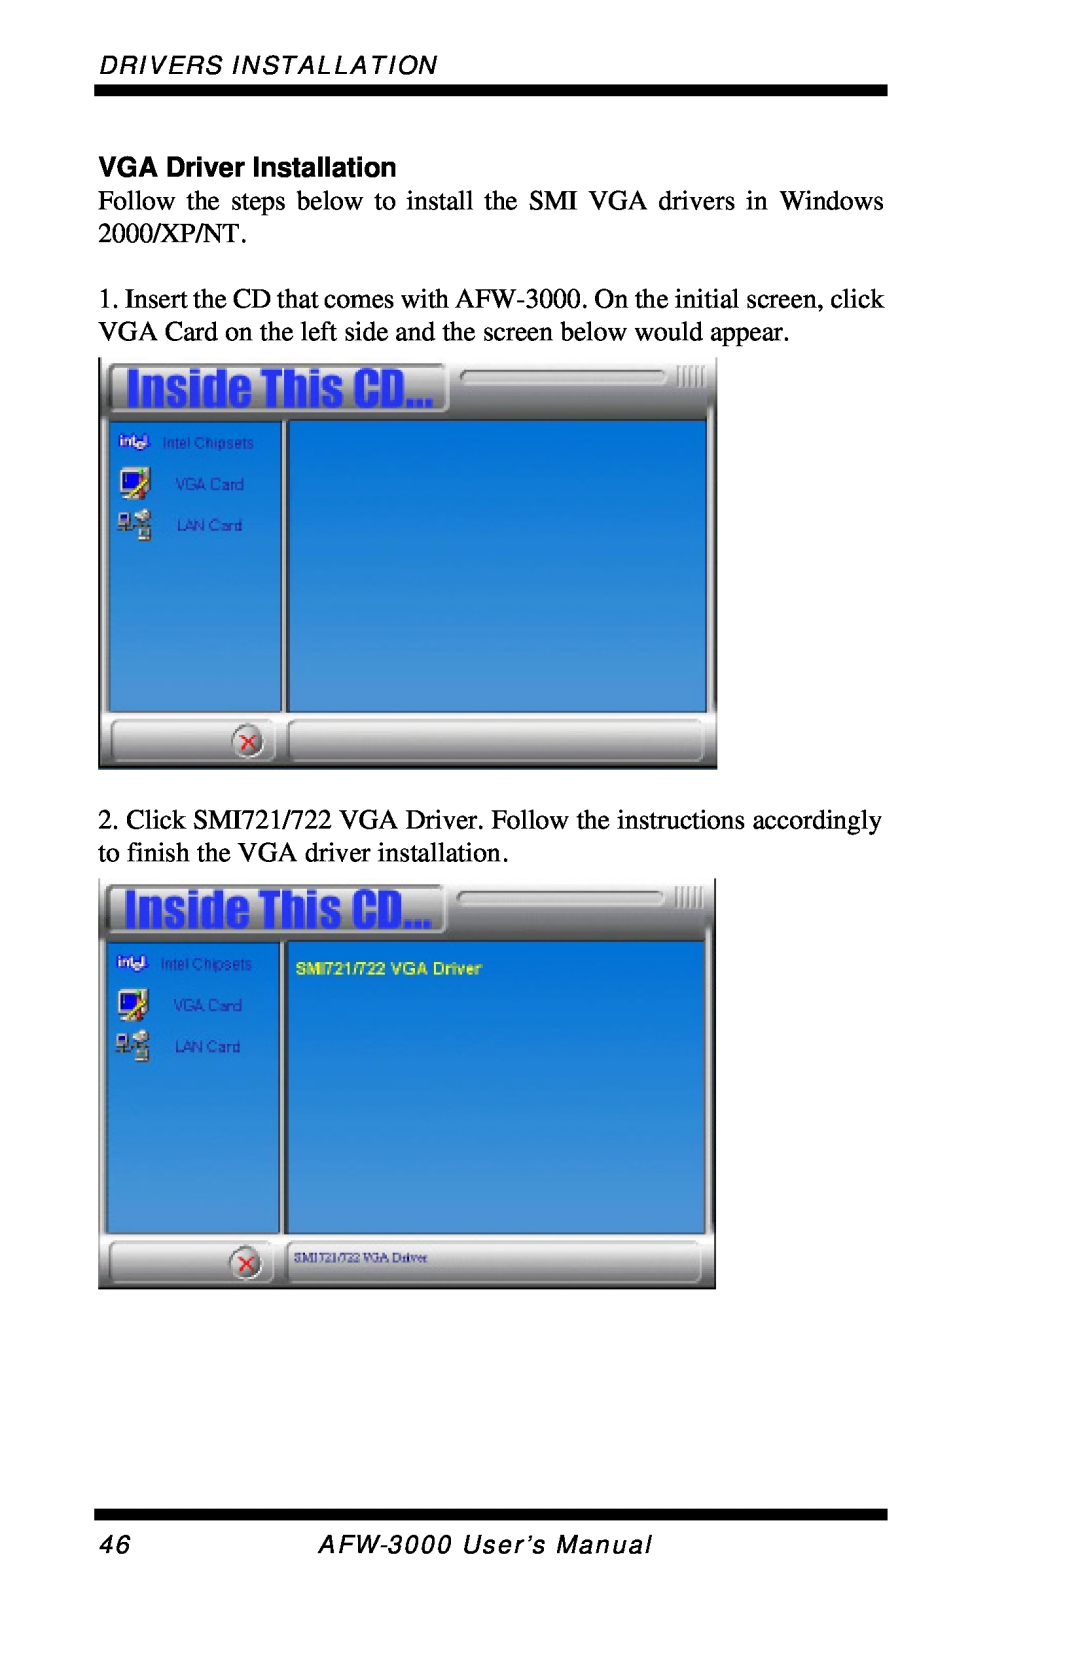 Intel E7501 user manual VGA Driver Installation, Drivers Installation, AFW-3000User’s Manual 